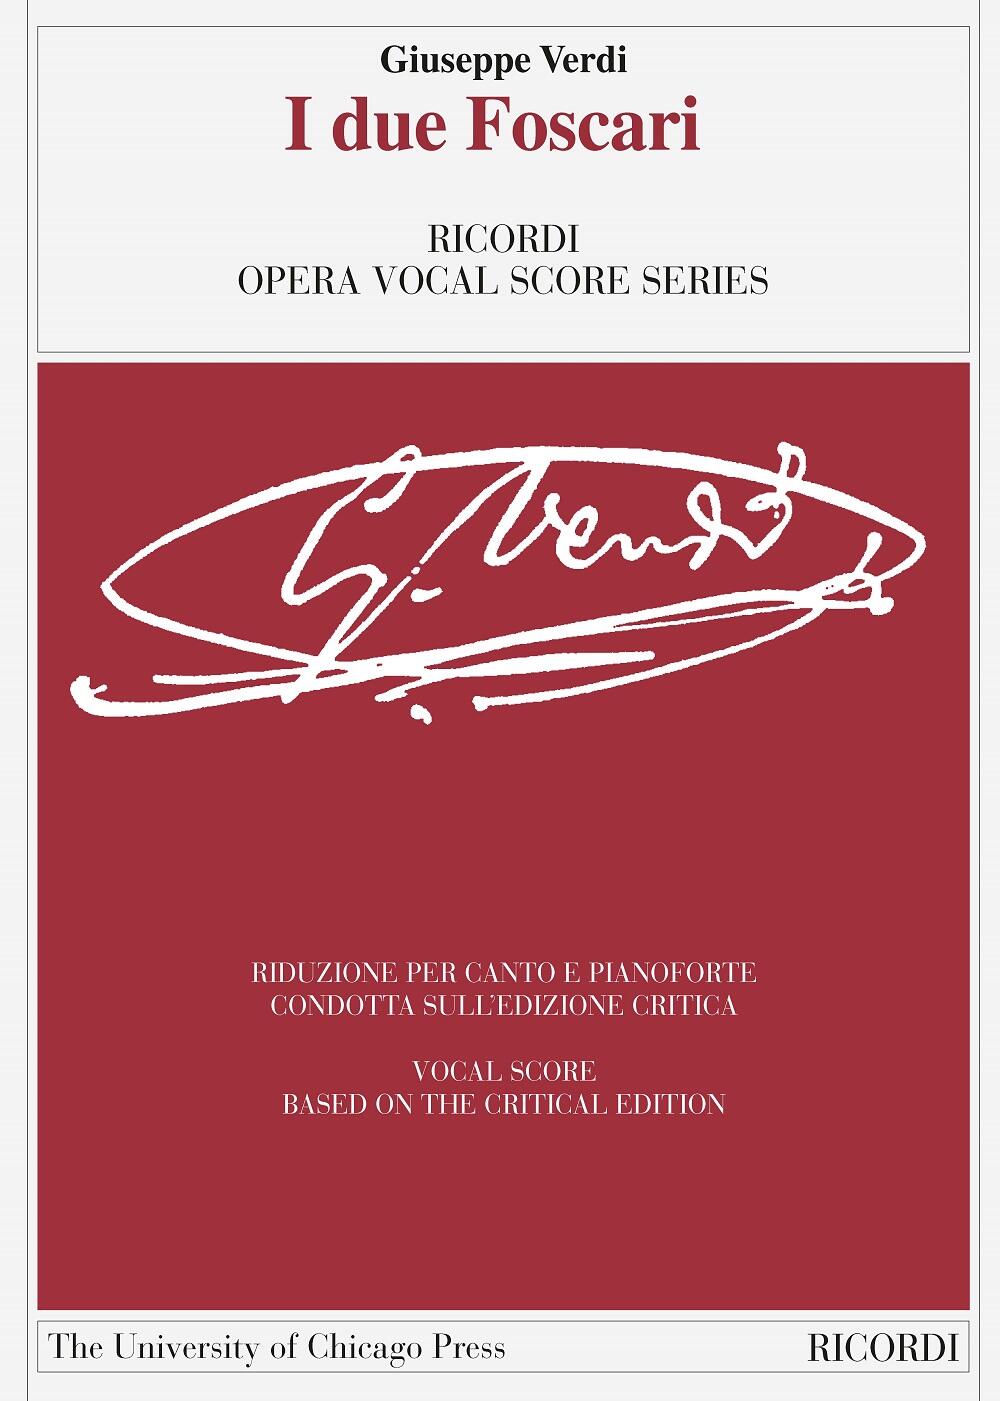 I due Foscari Ed. critica di Andreas Giger - Riduzione per canto e pianoforte : photo 1